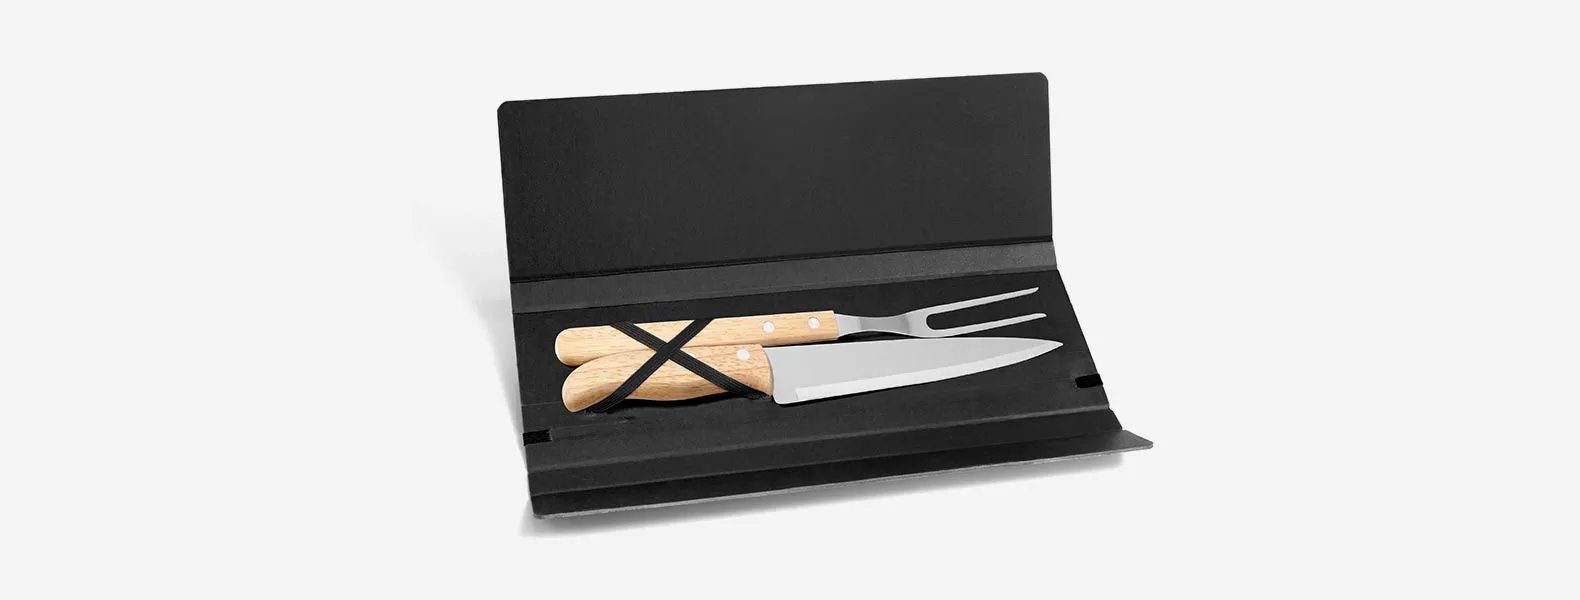 Conjunto composto por uma faca 7” e um garfo trinchante, ambos com cabos em madeira e lâminas em aço Inox. Estão organizados em uma pasta preta com elásticos.